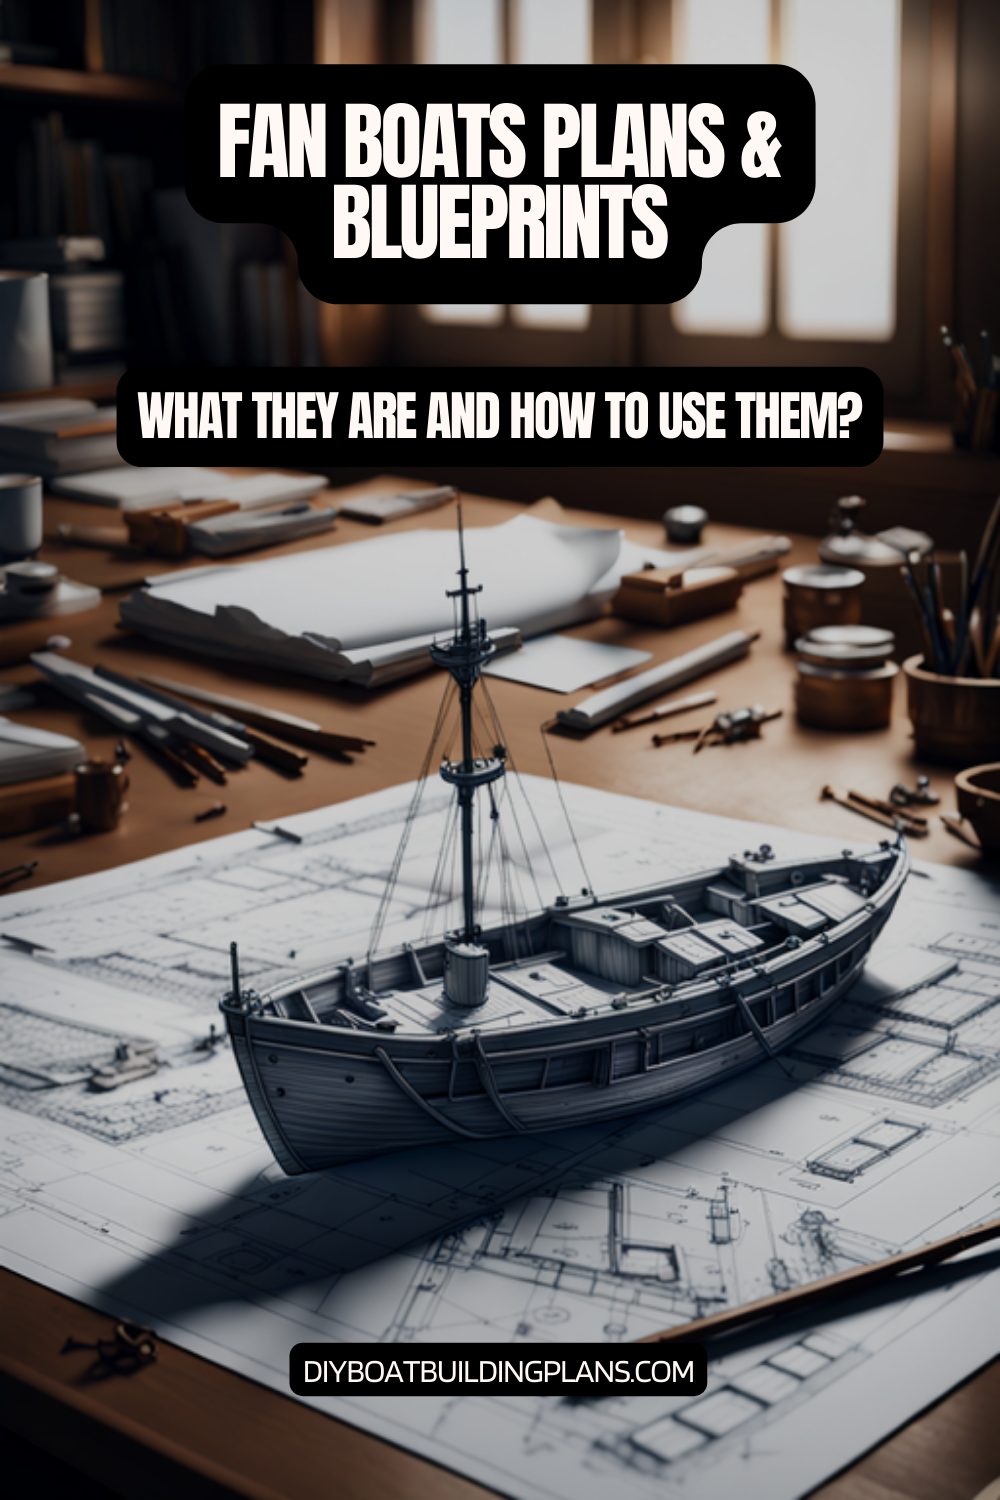 Fan Boat Plans & Blueprints